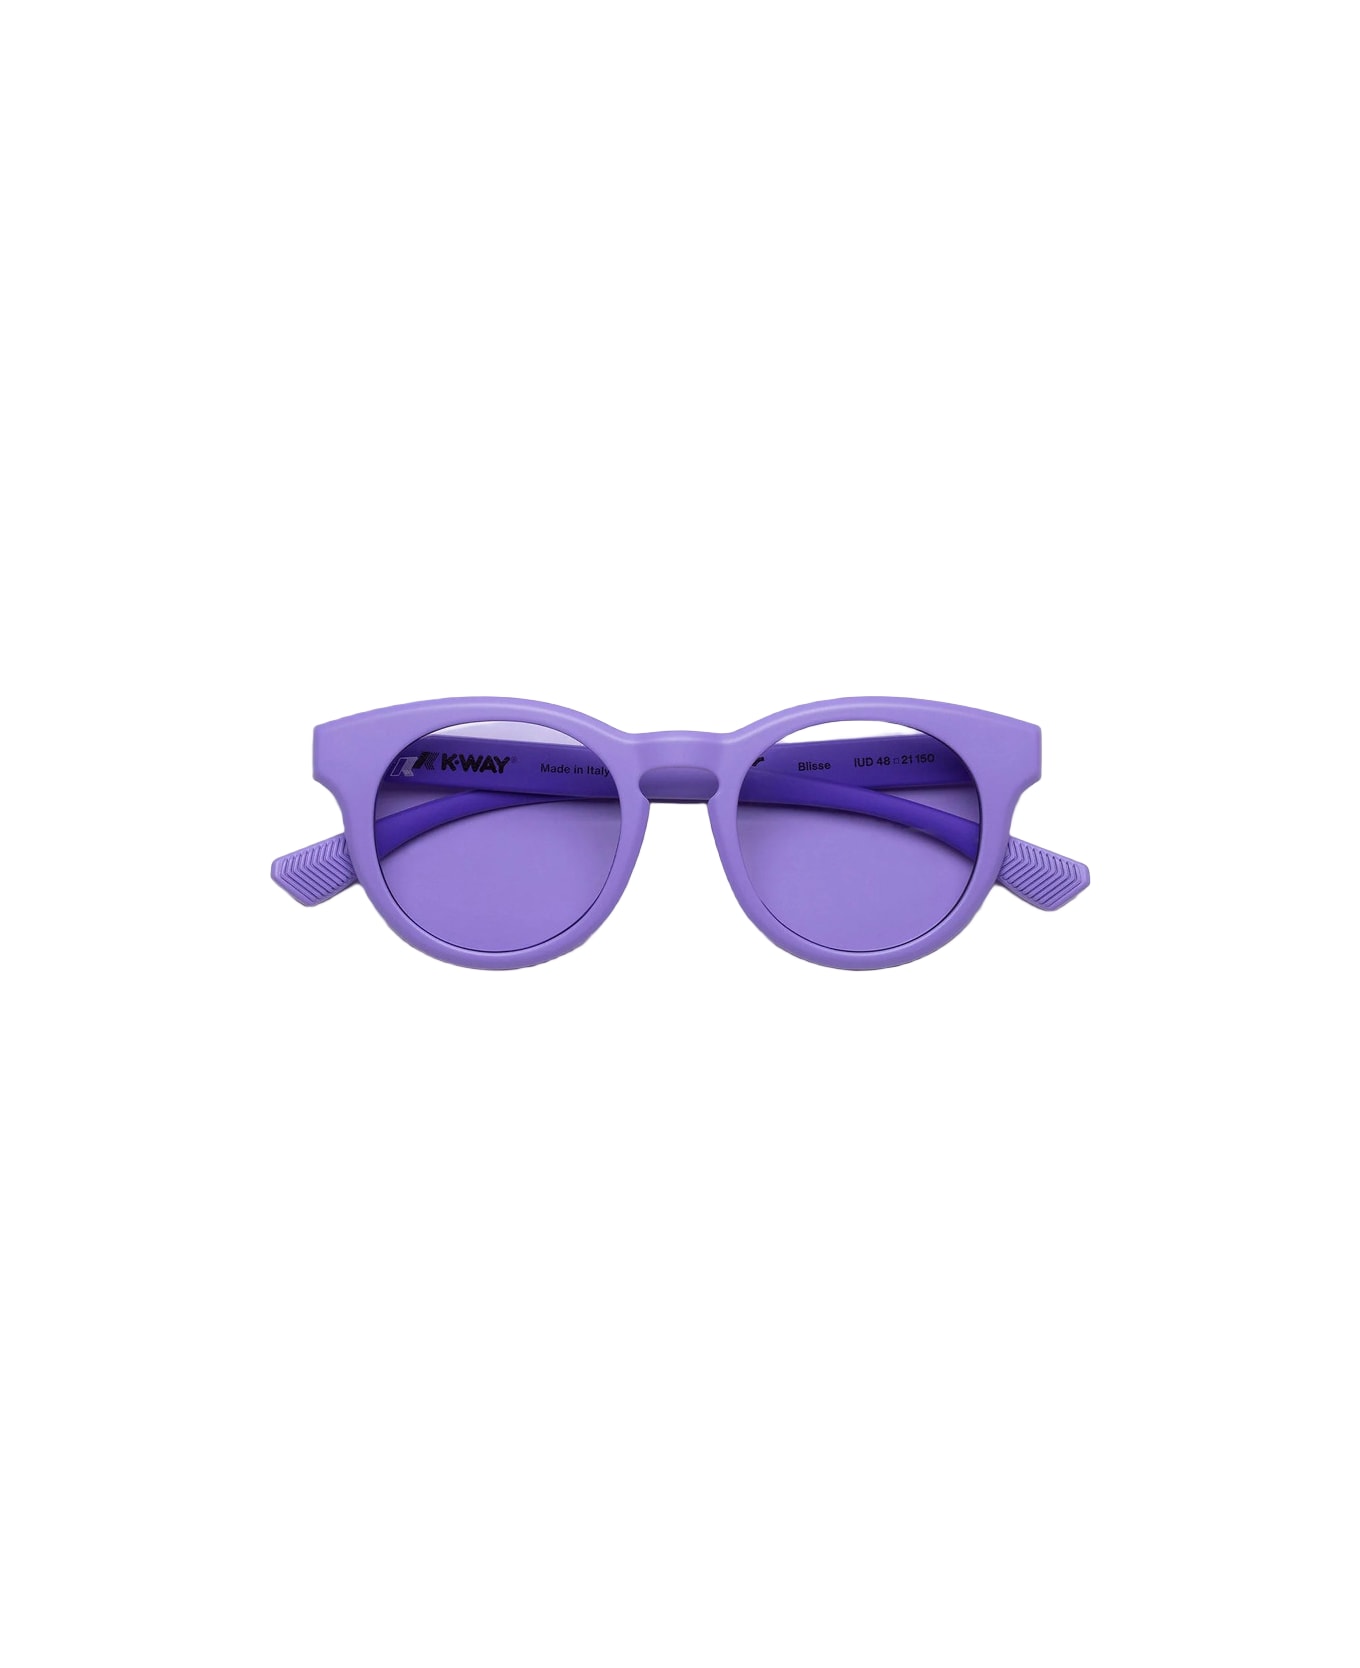 K-Way Blissè Violet Sunglasses - Violet